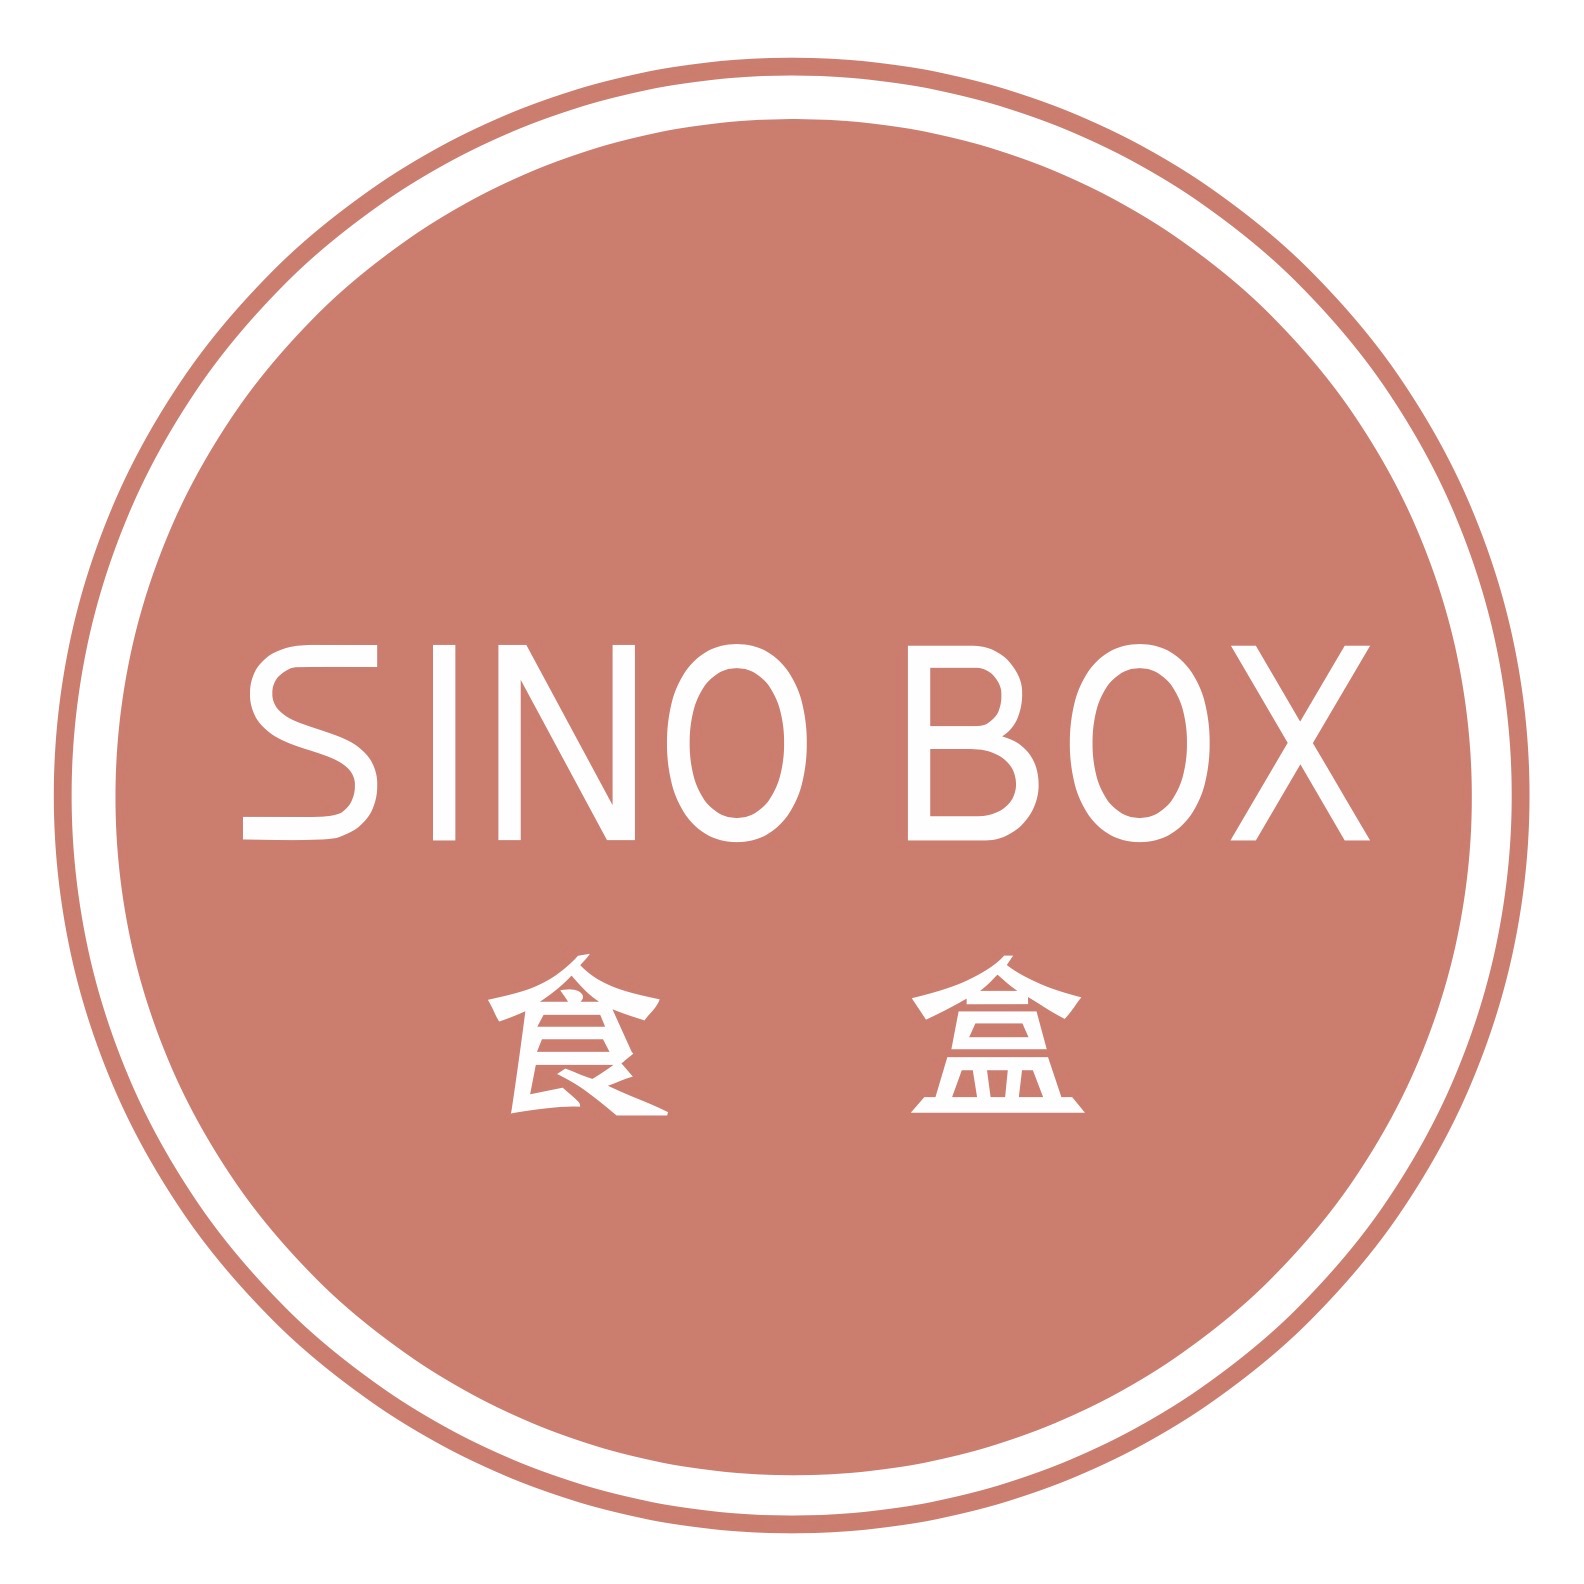 Sinobox logo.jpeg